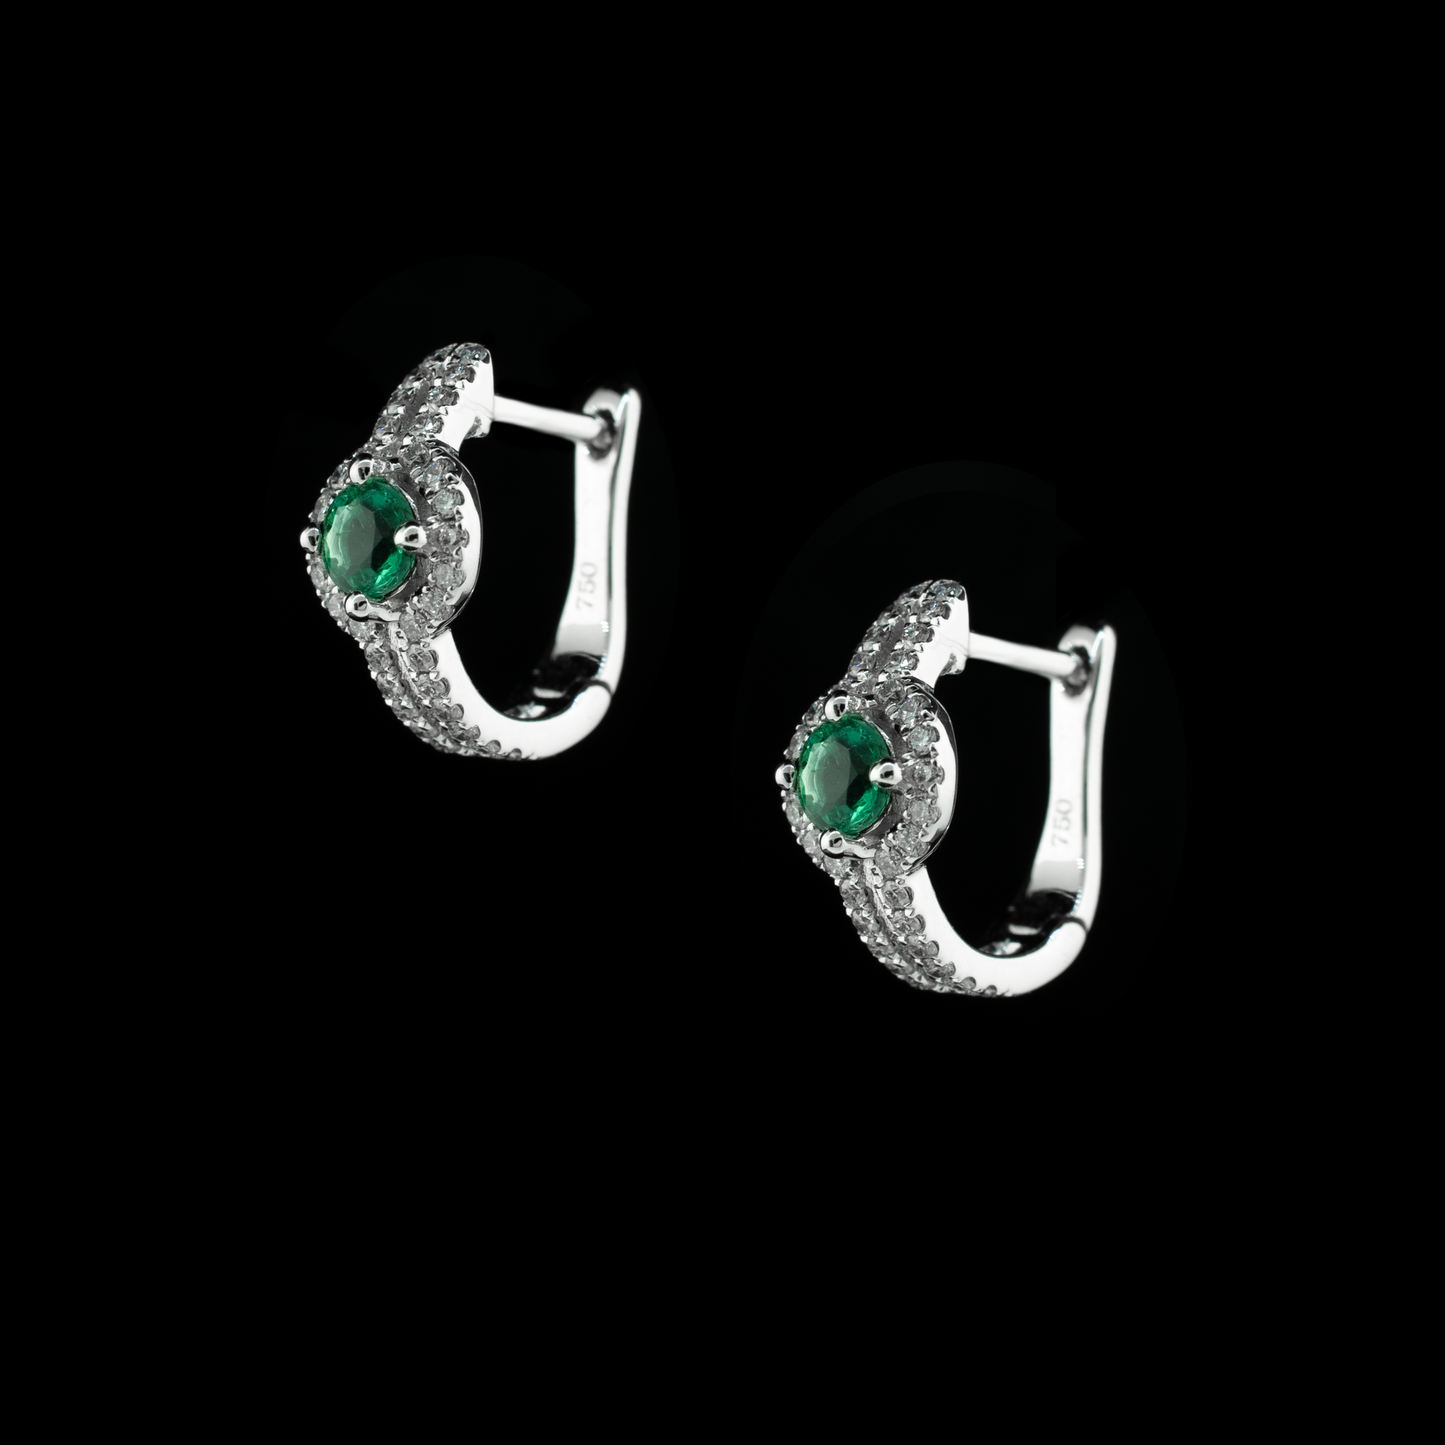 The Little Emerald Earrings